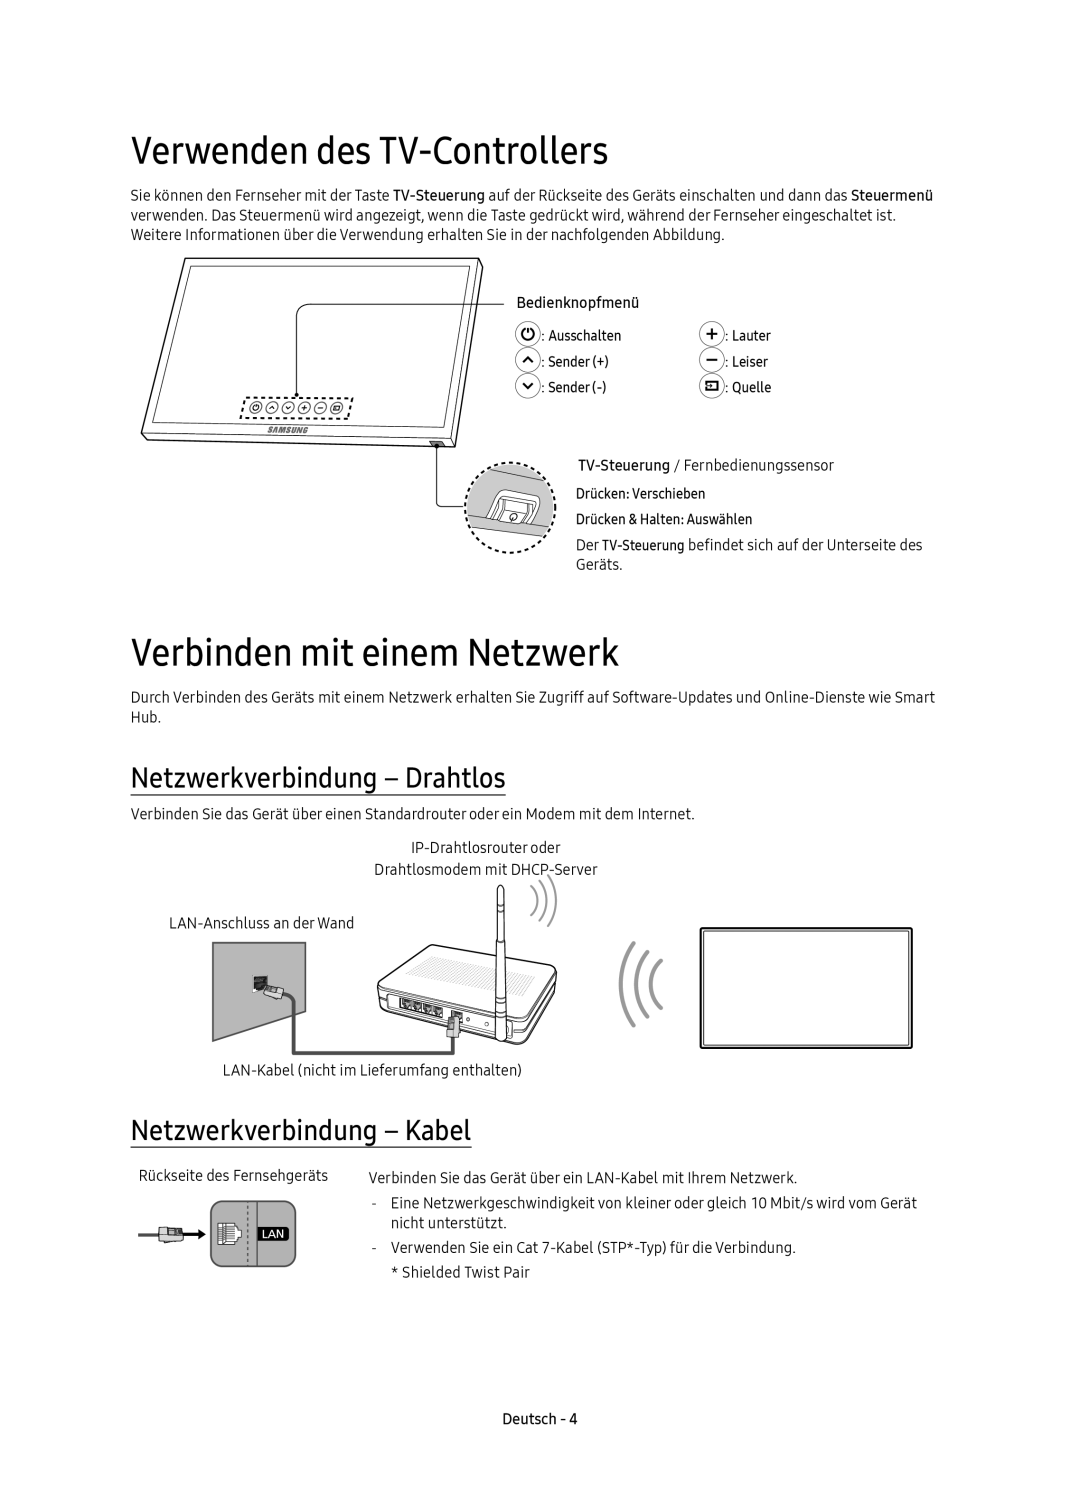 Samsung UE55KS7590UXZG Verwenden des TV-Controllers, Verbinden mit einem Netzwerk, Netzwerkverbindung - Drahtlos, Deutsch 